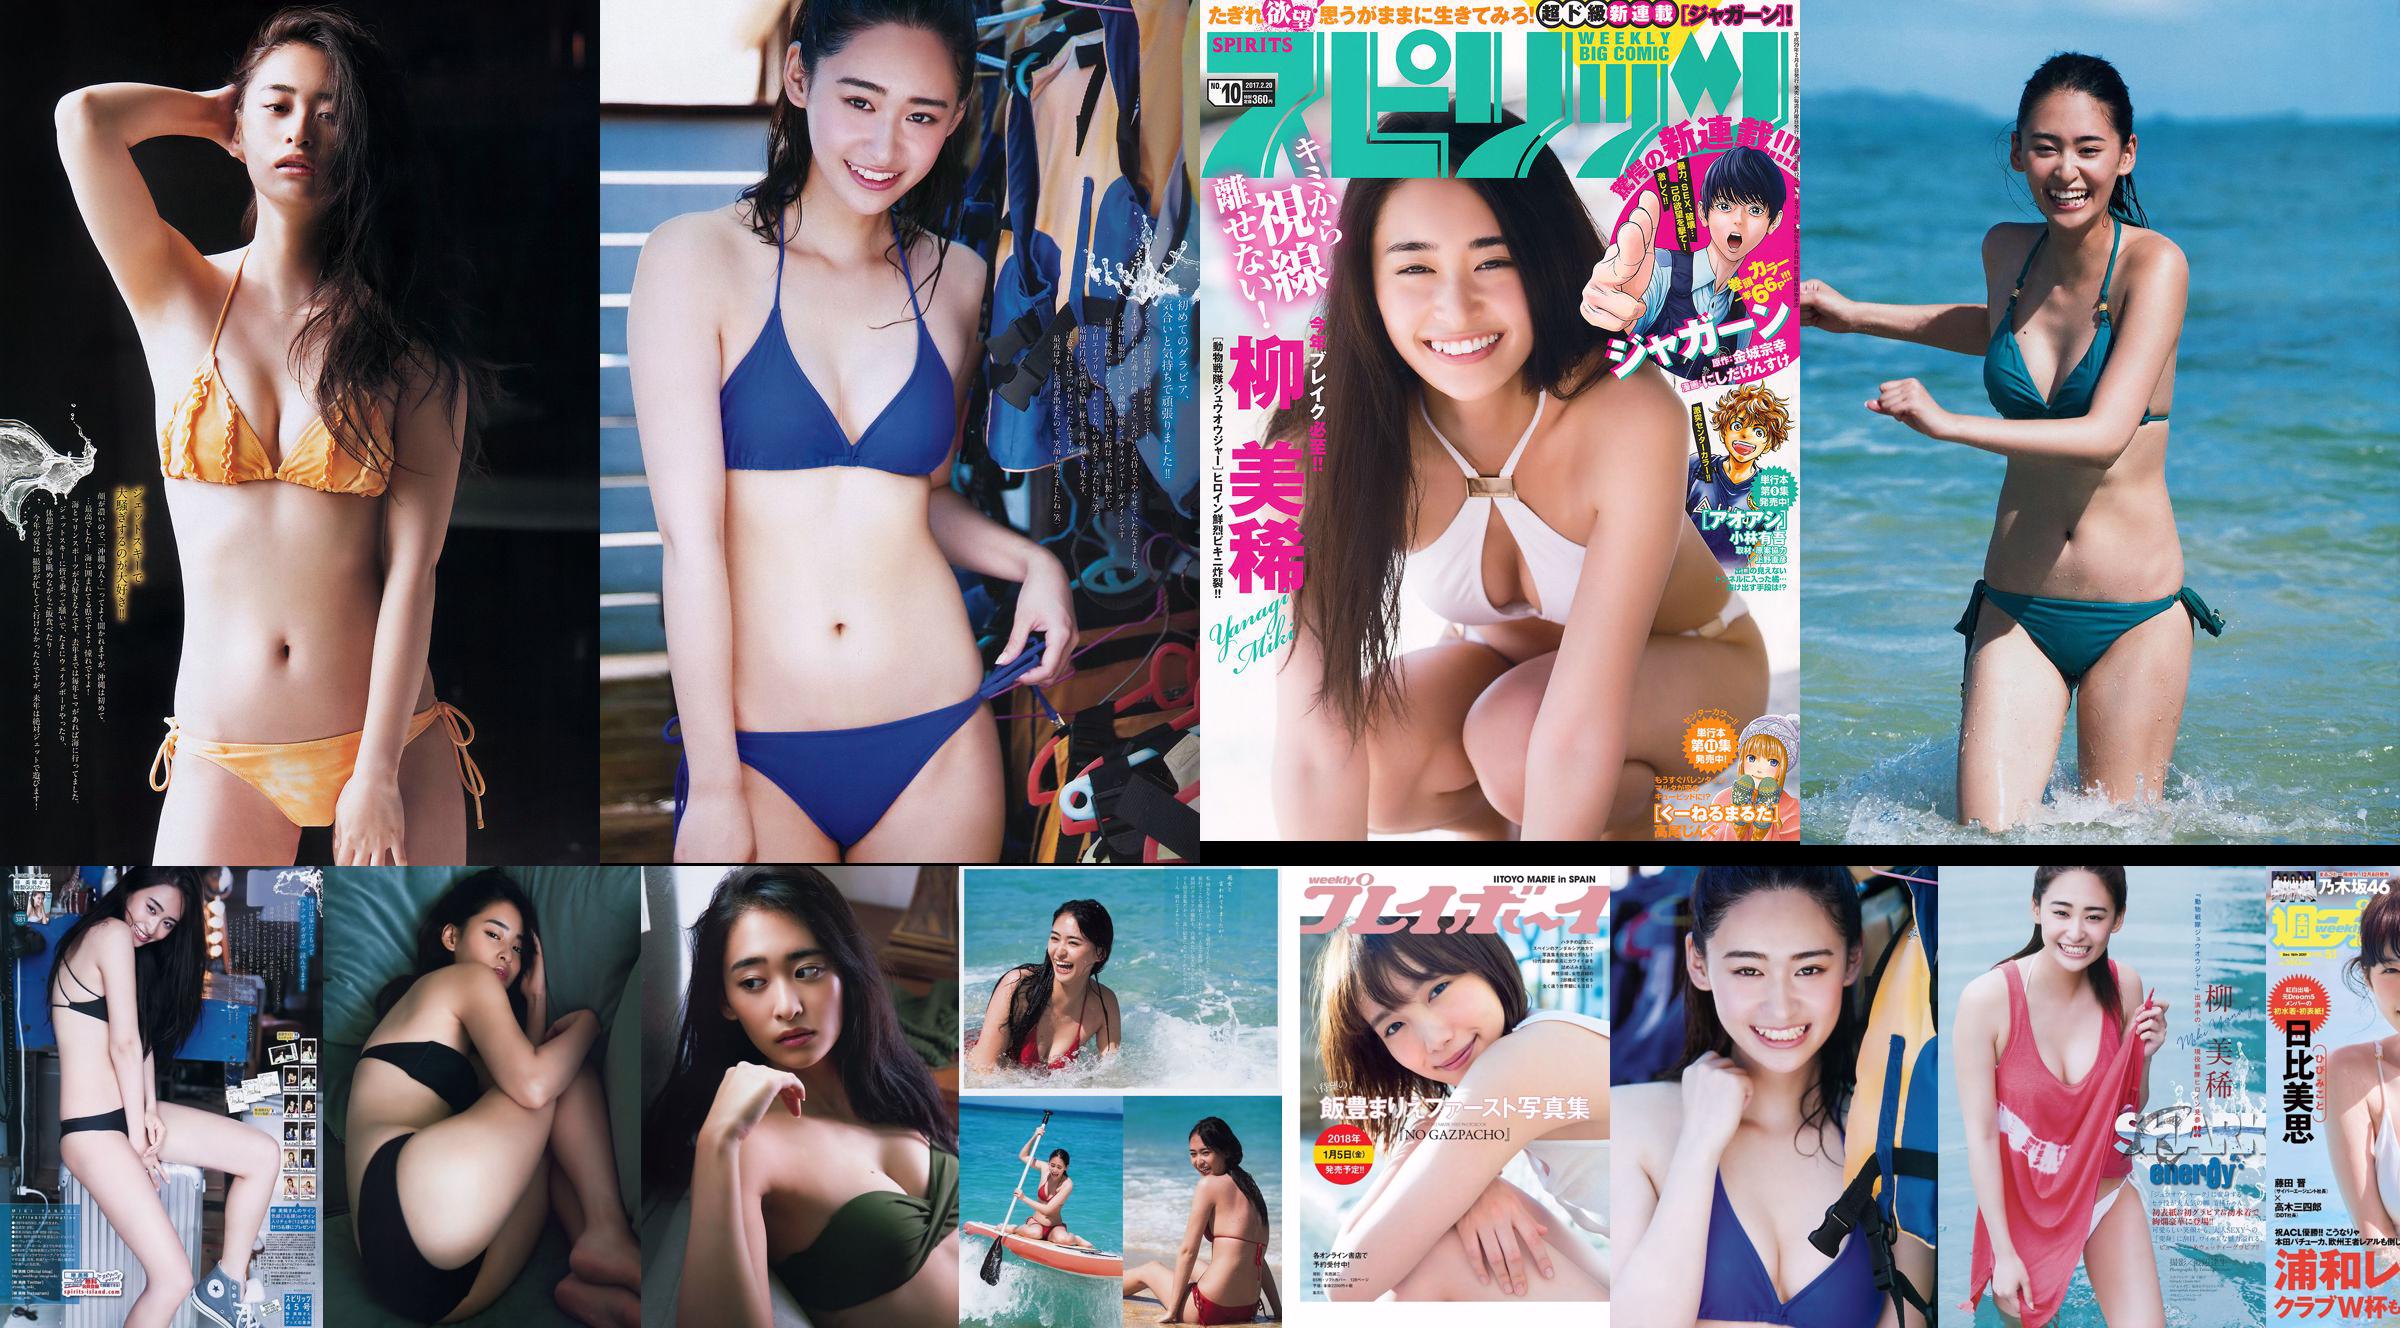 Miki Yanagi Sara Oshino Cecil Kishimoto Mikoto Hibi [Weekly Playboy] 2017 No.51 Photographie No.5ff00d Page 1